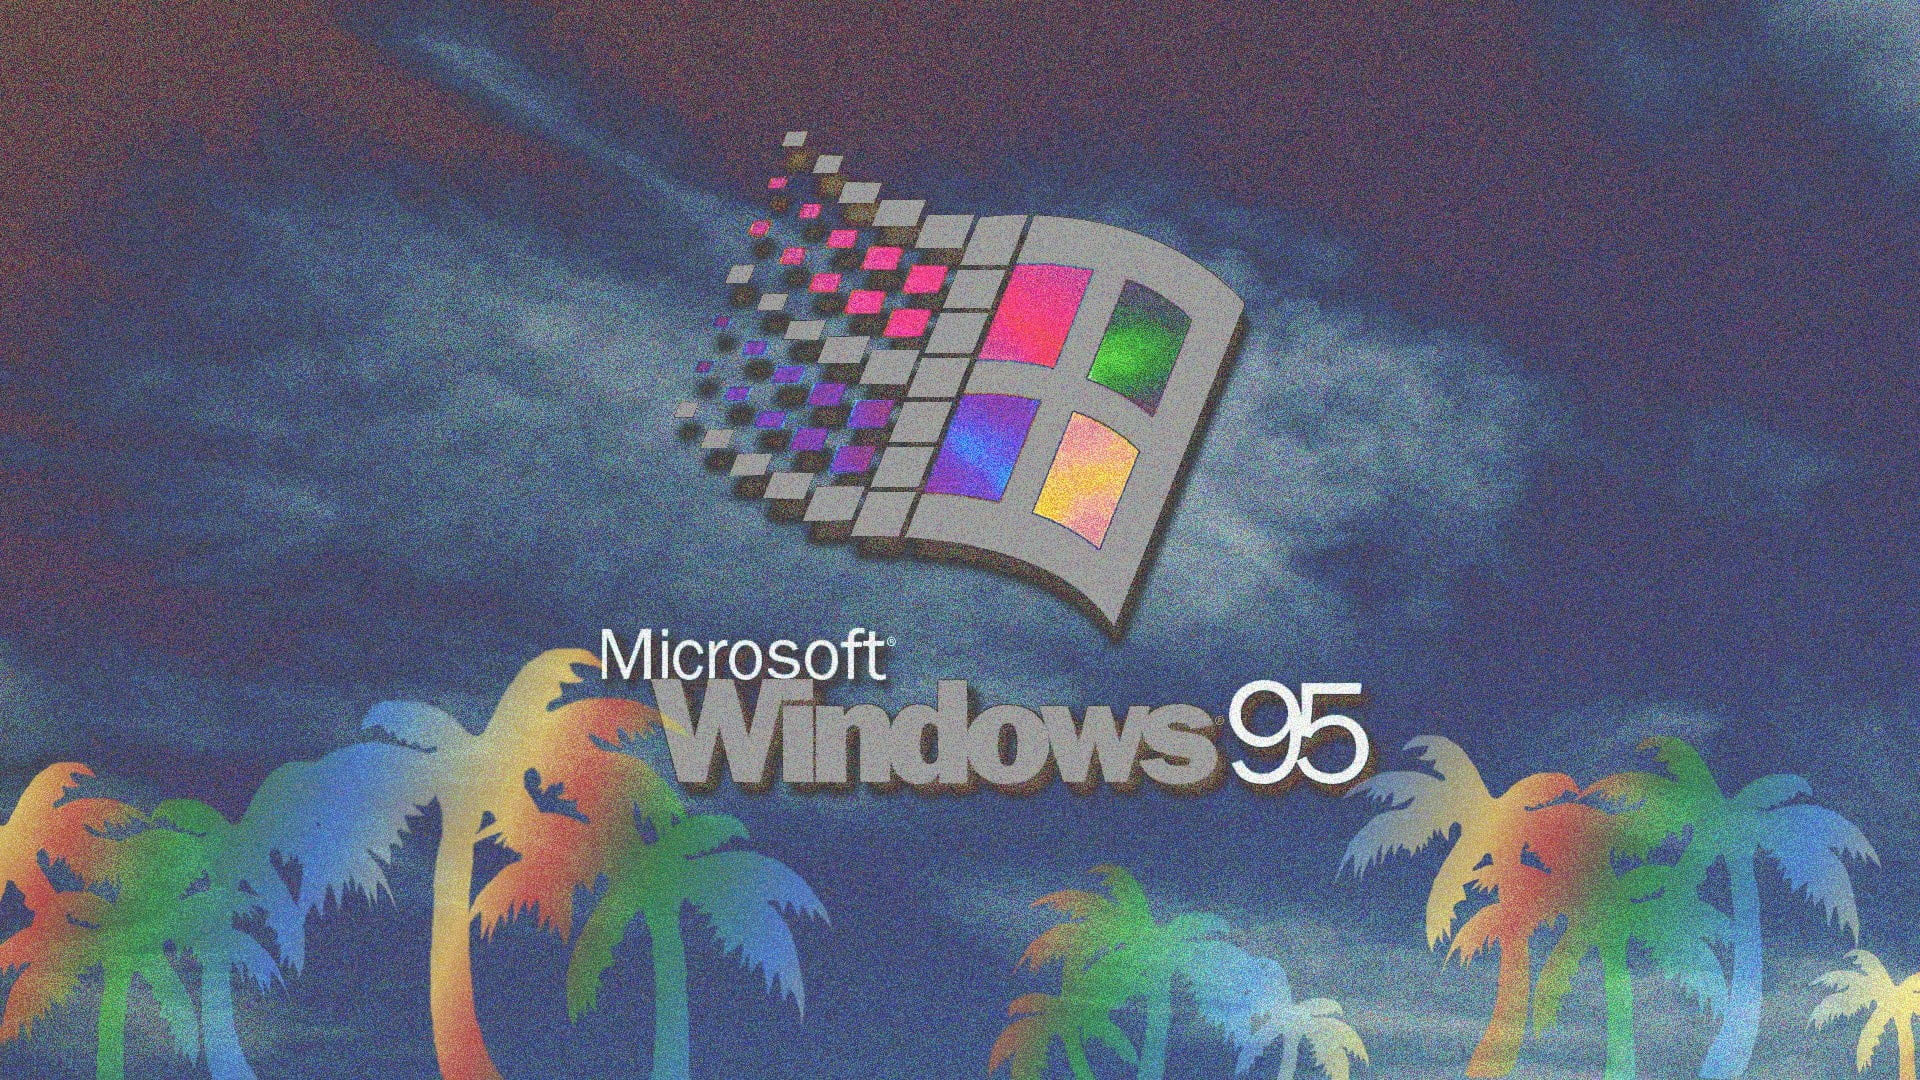 Microsoft Windows 95 wallpaper, vaporwave, glitch art, 3D, 3d design